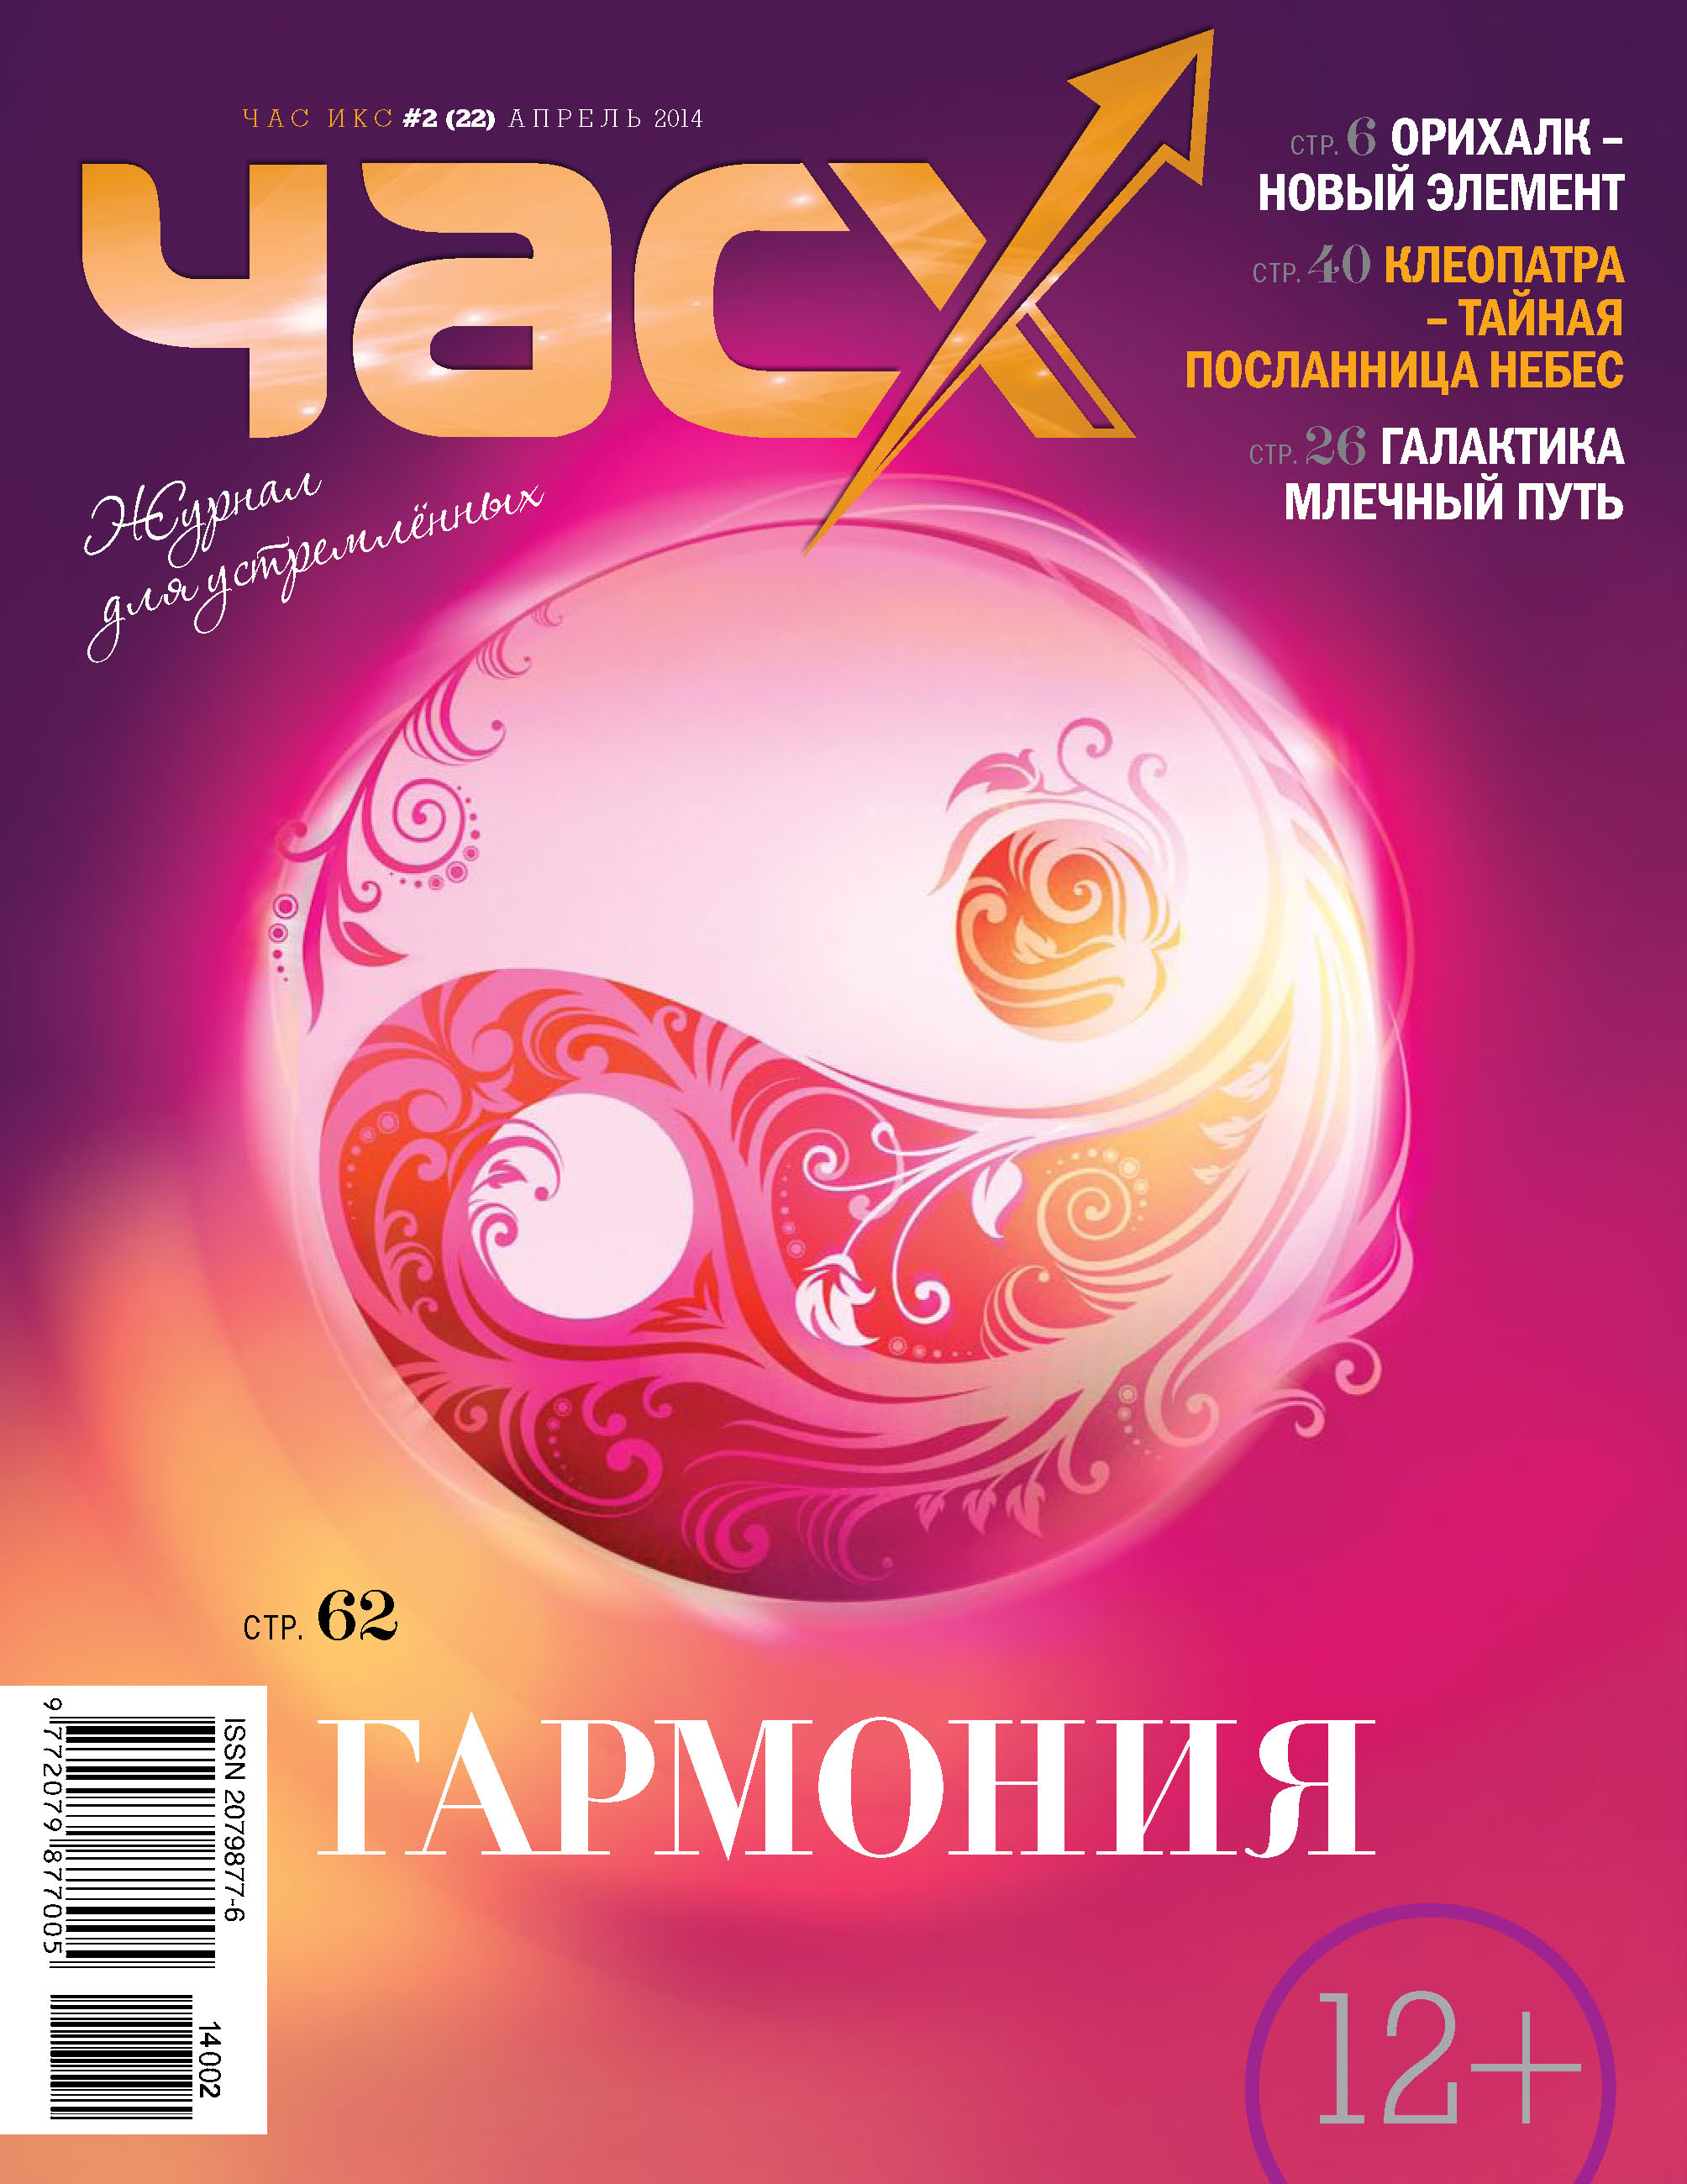 Час X. Журнал для устремленных. №2/2014